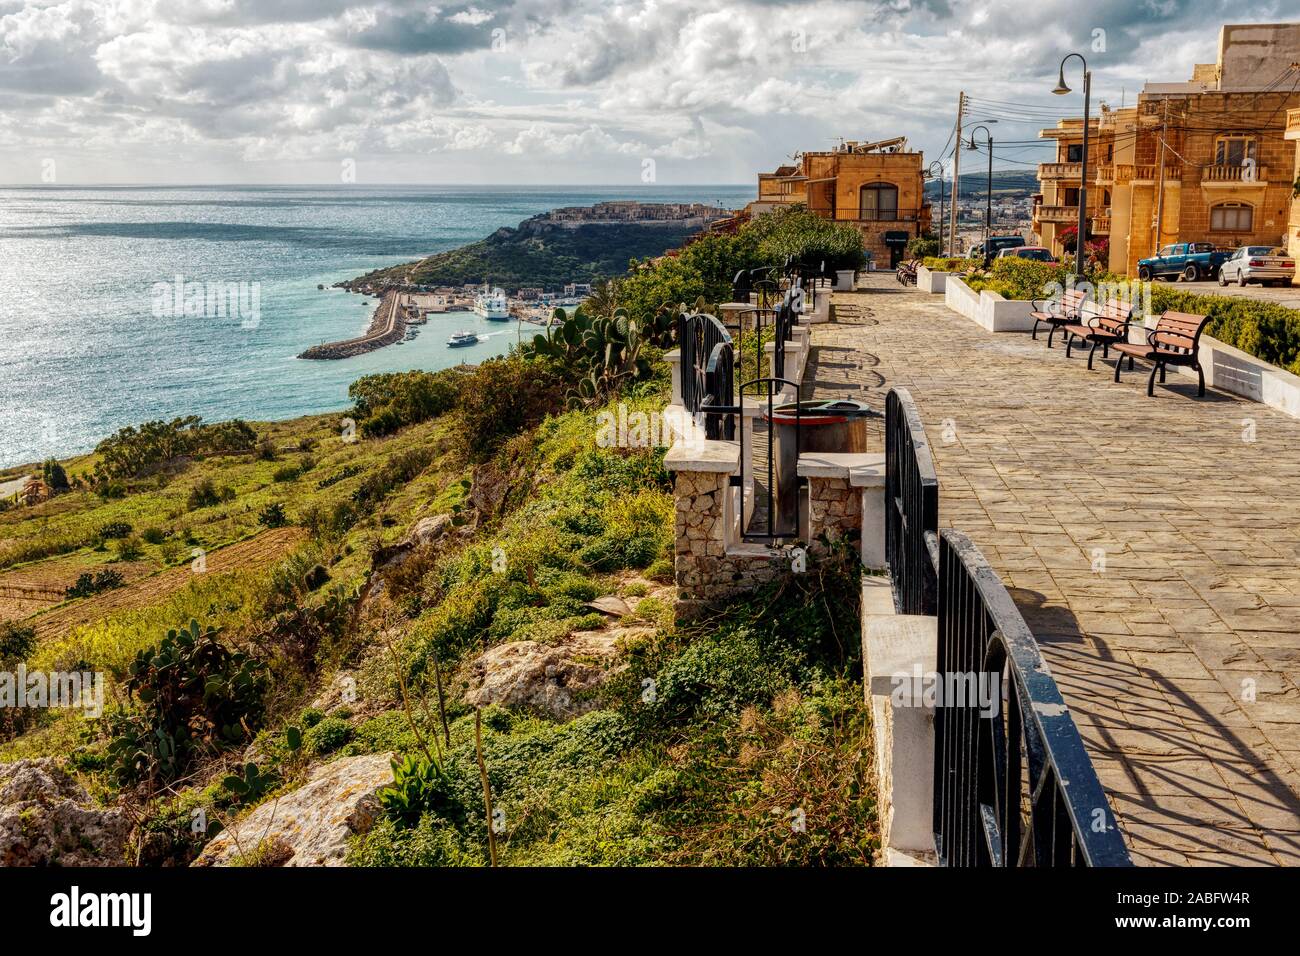 Die qala Rat restaurierte Belvedere in Triq iż-Żewwieqa, Gozo, Malta. Teilweise durch die EU finanziert mit modernen redisign, eingebautem Bewässerung. Stockfoto